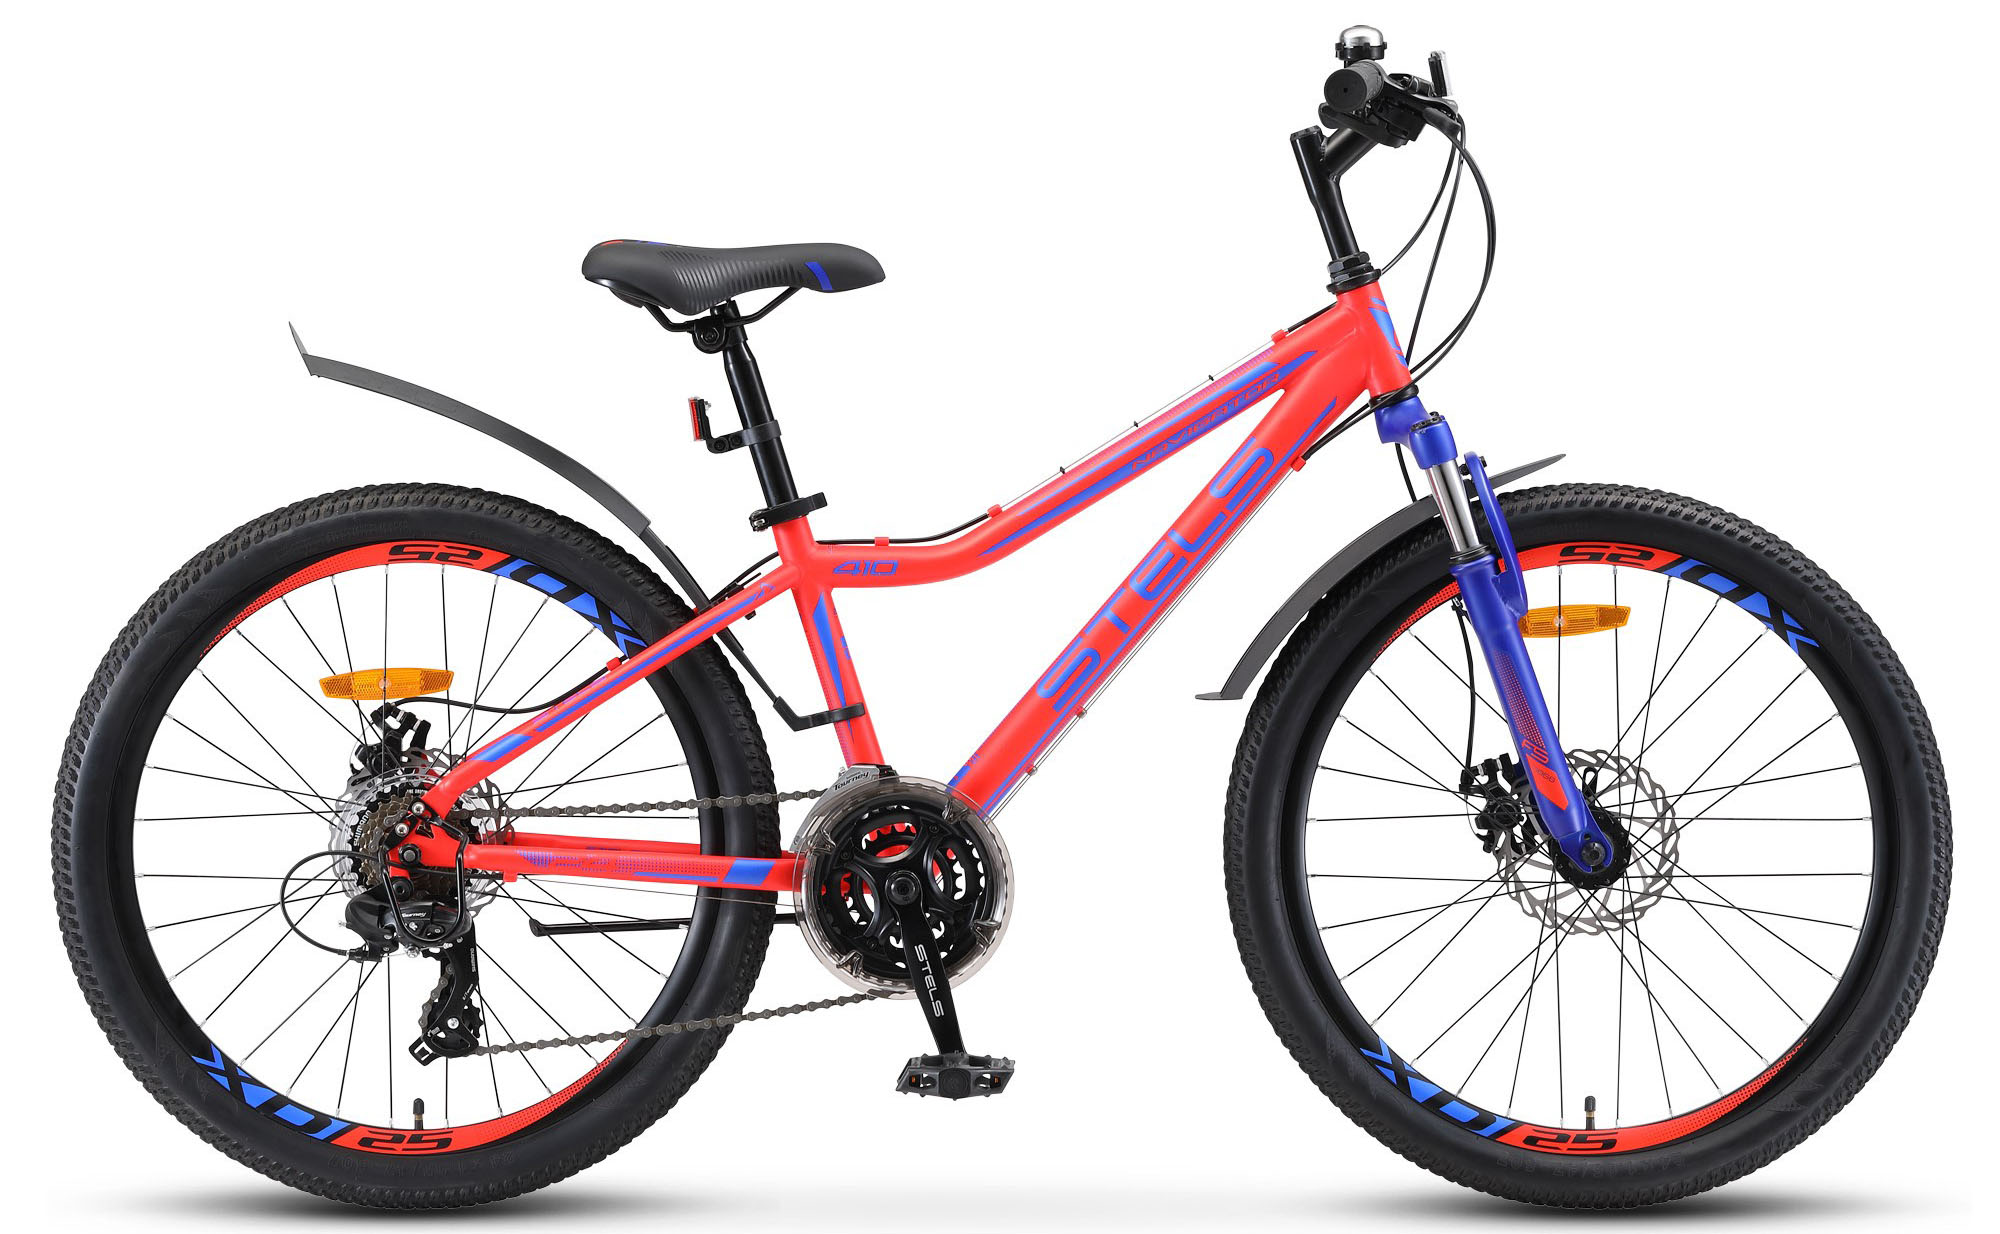  Отзывы о Подростковом велосипеде Stels Navigator 410 MD 24 21-sp V010 2019